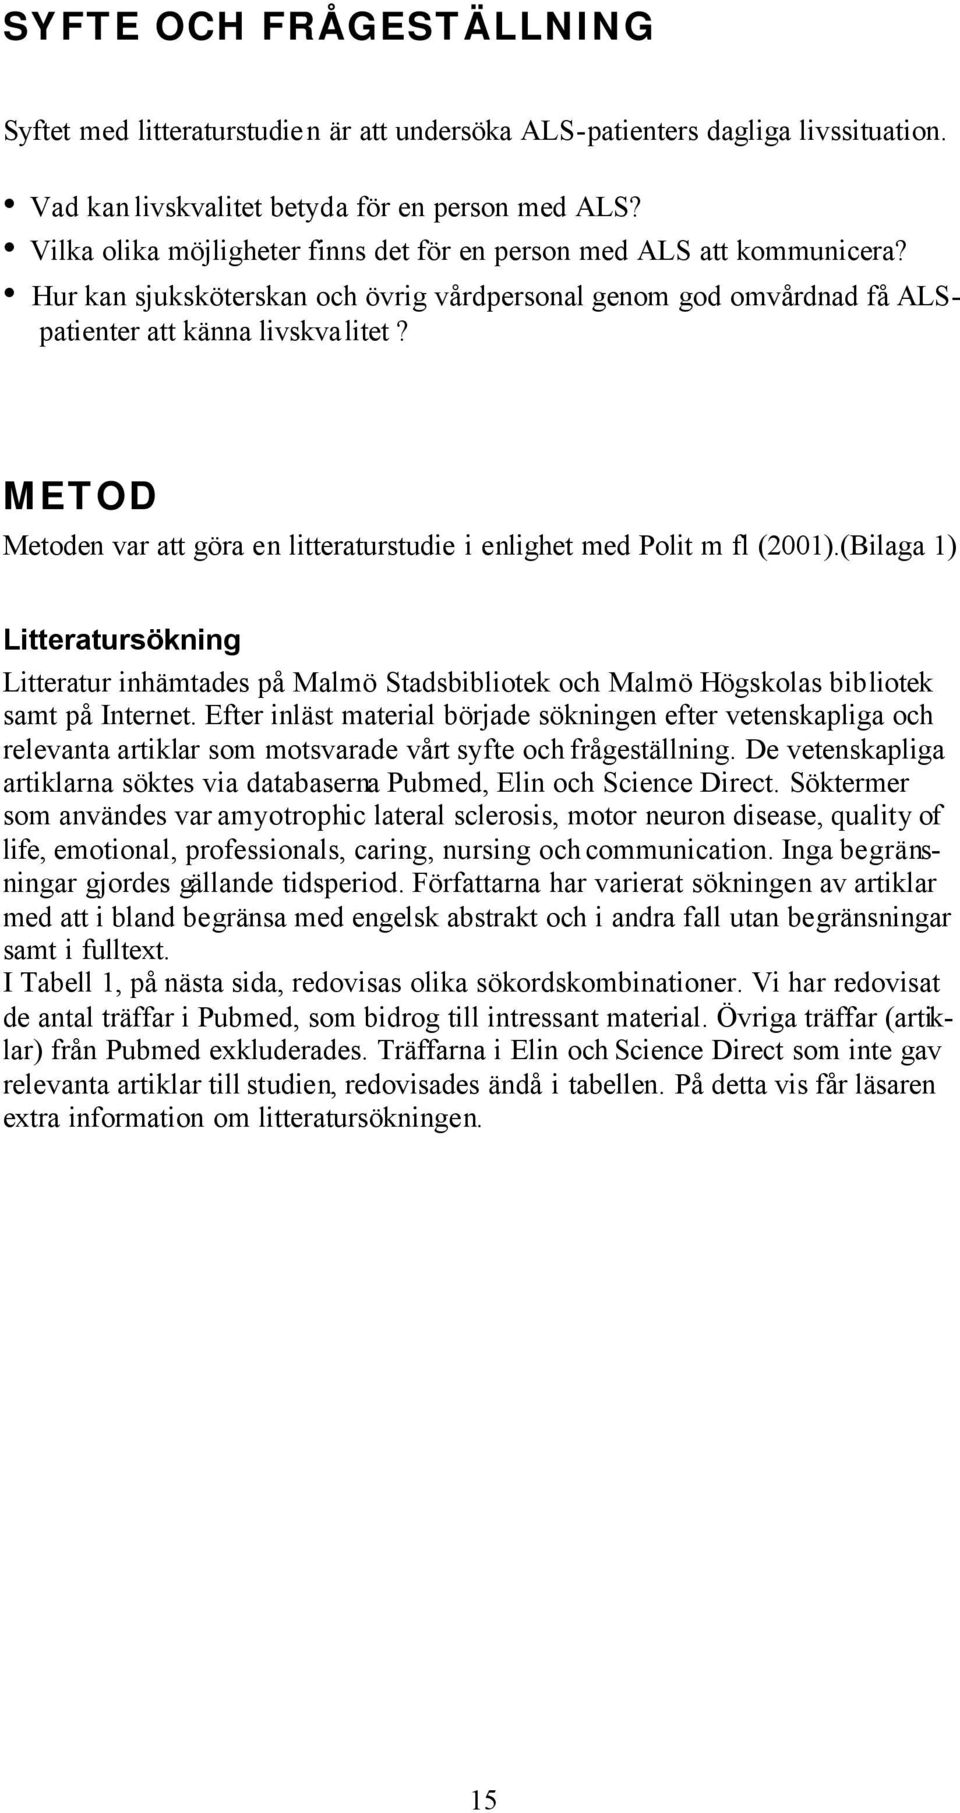 METOD Metoden var att göra en litteraturstudie i enlighet med Polit m fl (2001).